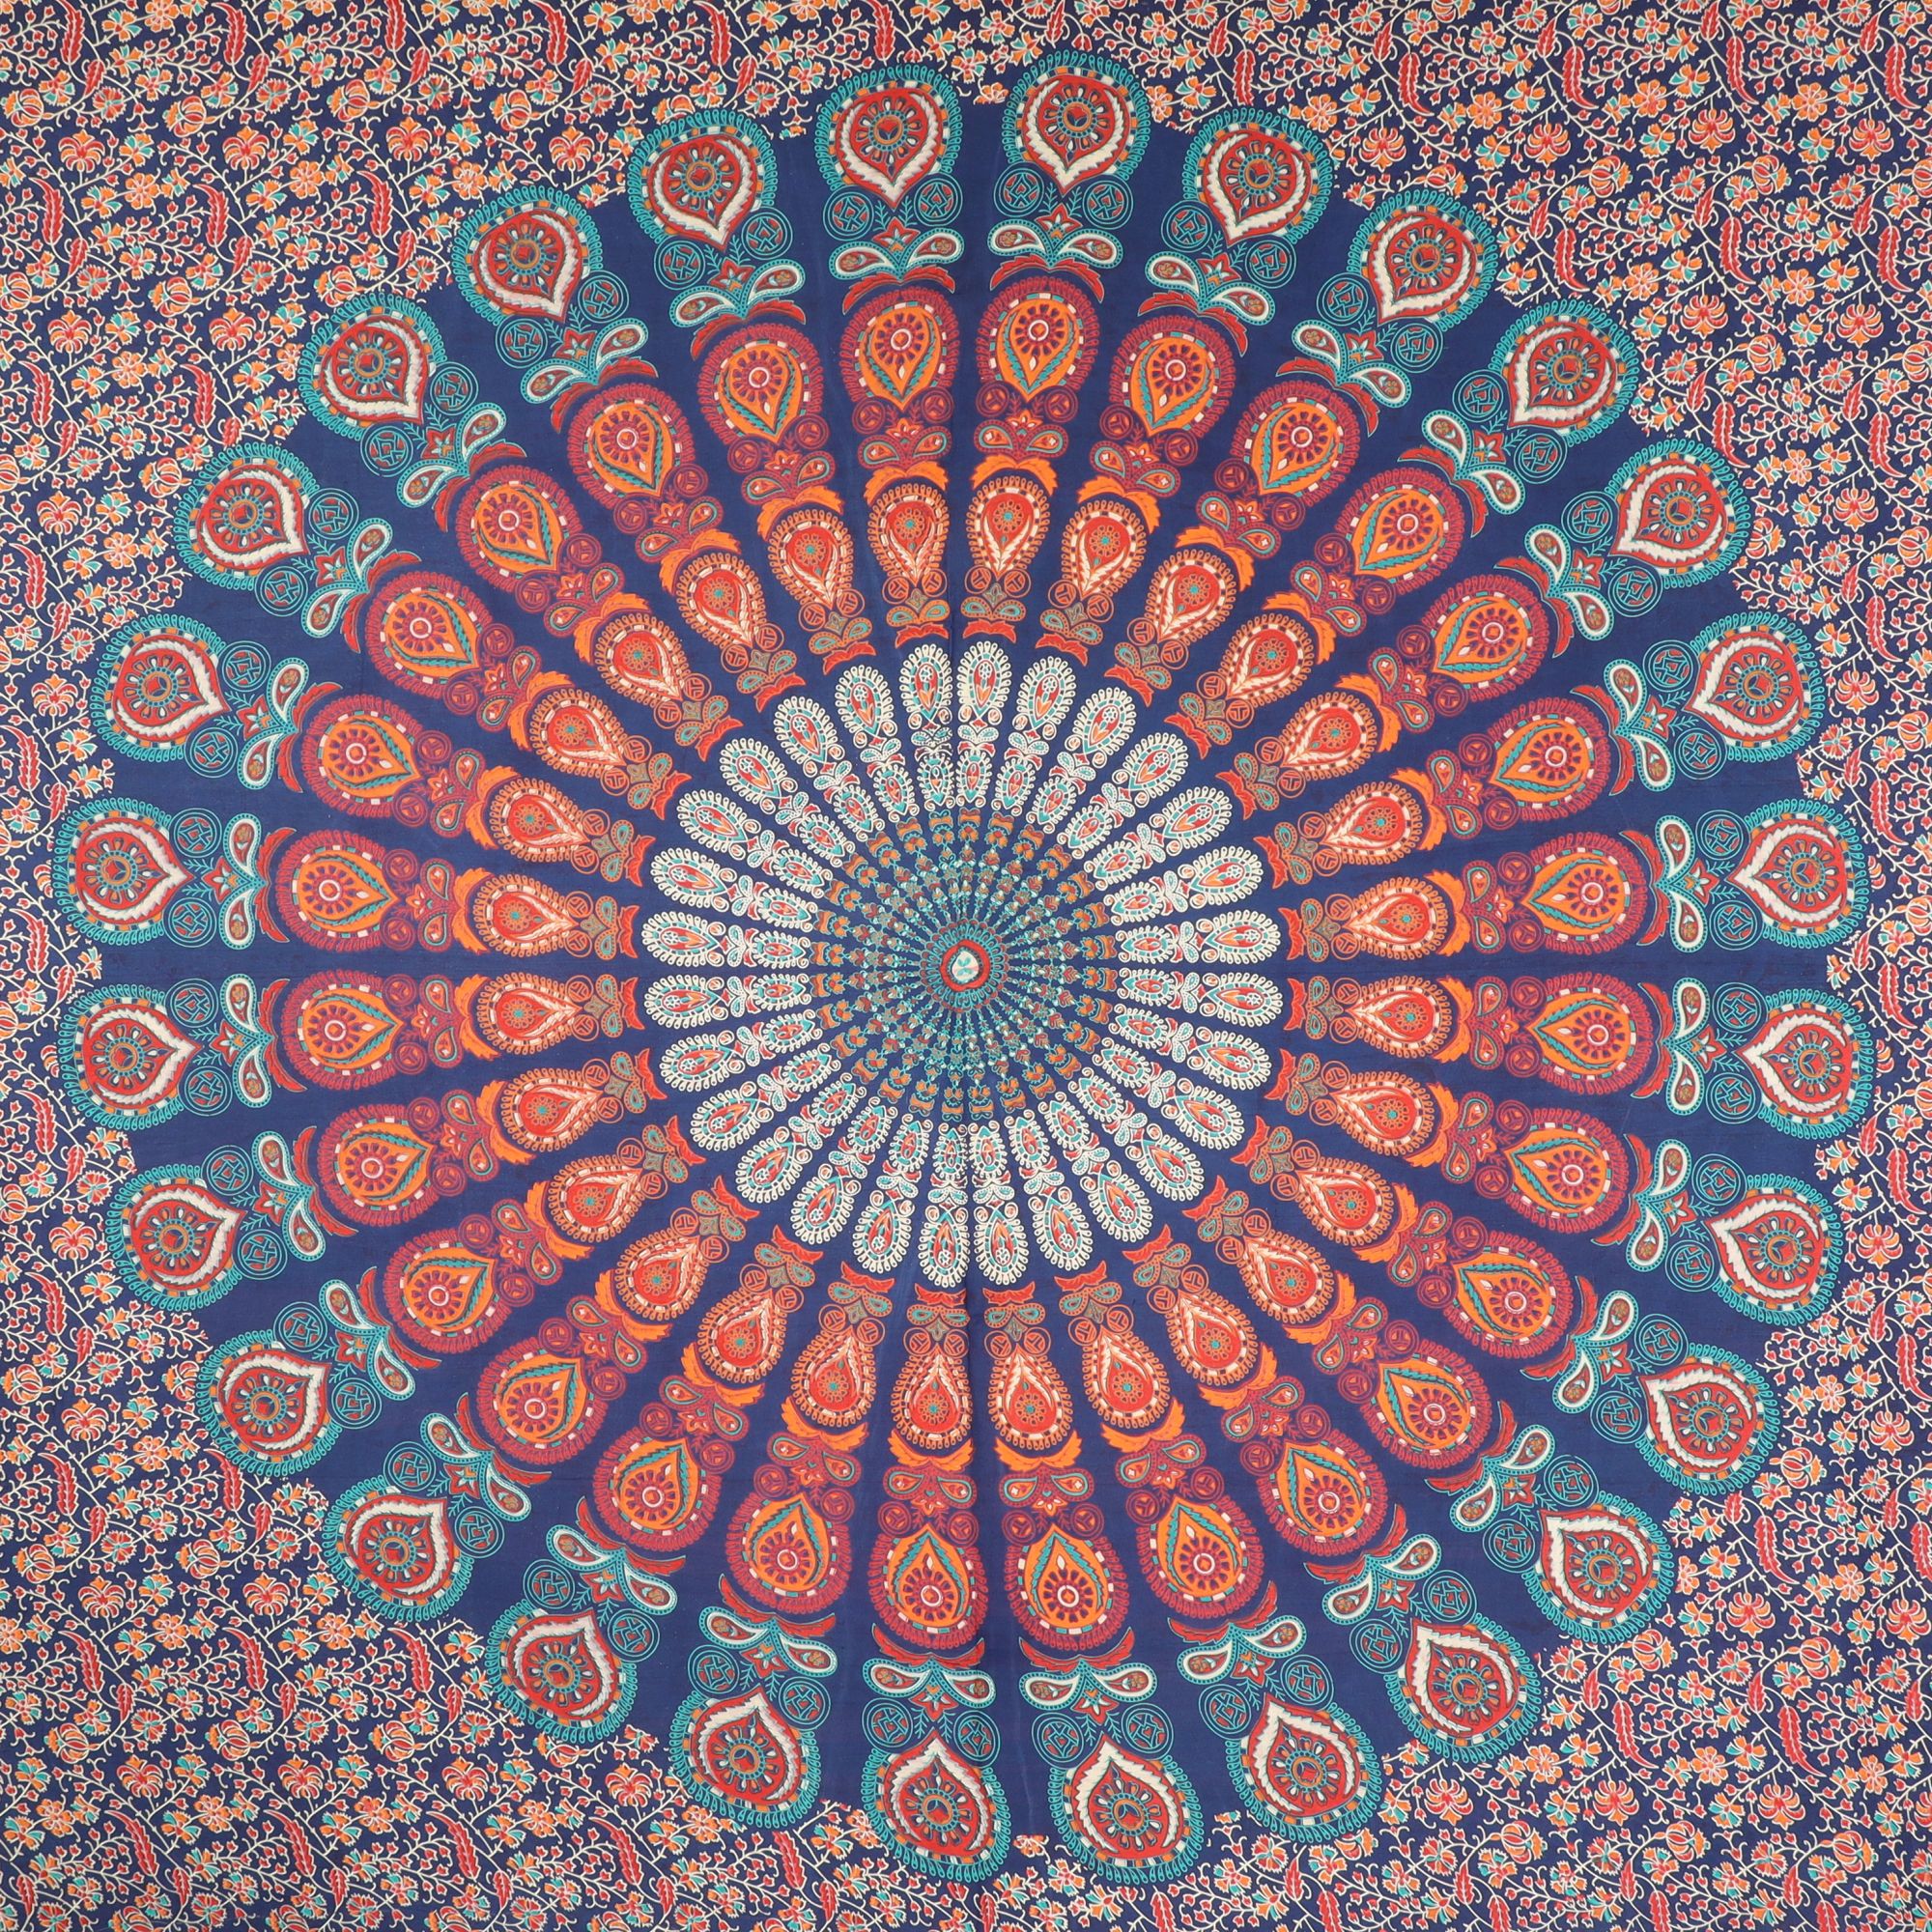 Wandtuch XXL 210x230 - Mandala - 100% Baumwolle - detailreicher indischer Druck - mehrfarbig - dekoratives Tuch, Wandbild, Tagesdecke, Bedcover, Vorhang, Picknick-Decke, Strandtuch